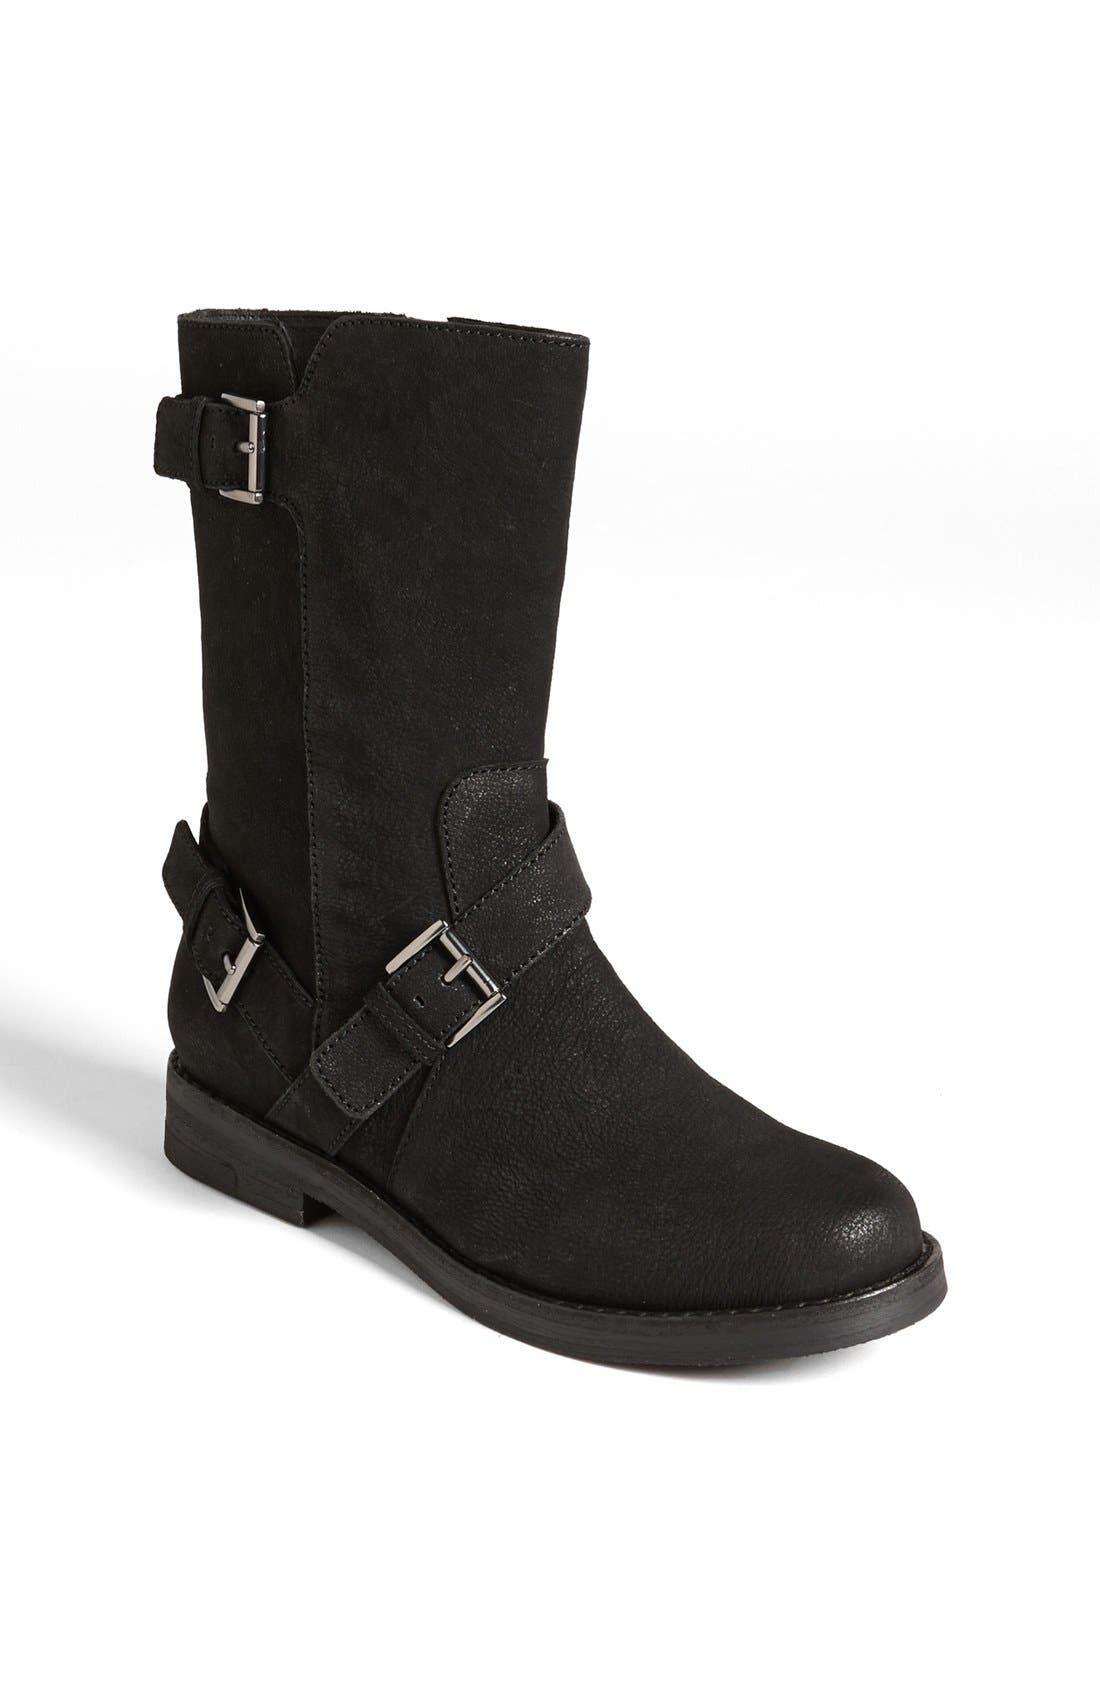 grey womens timberland boots uk